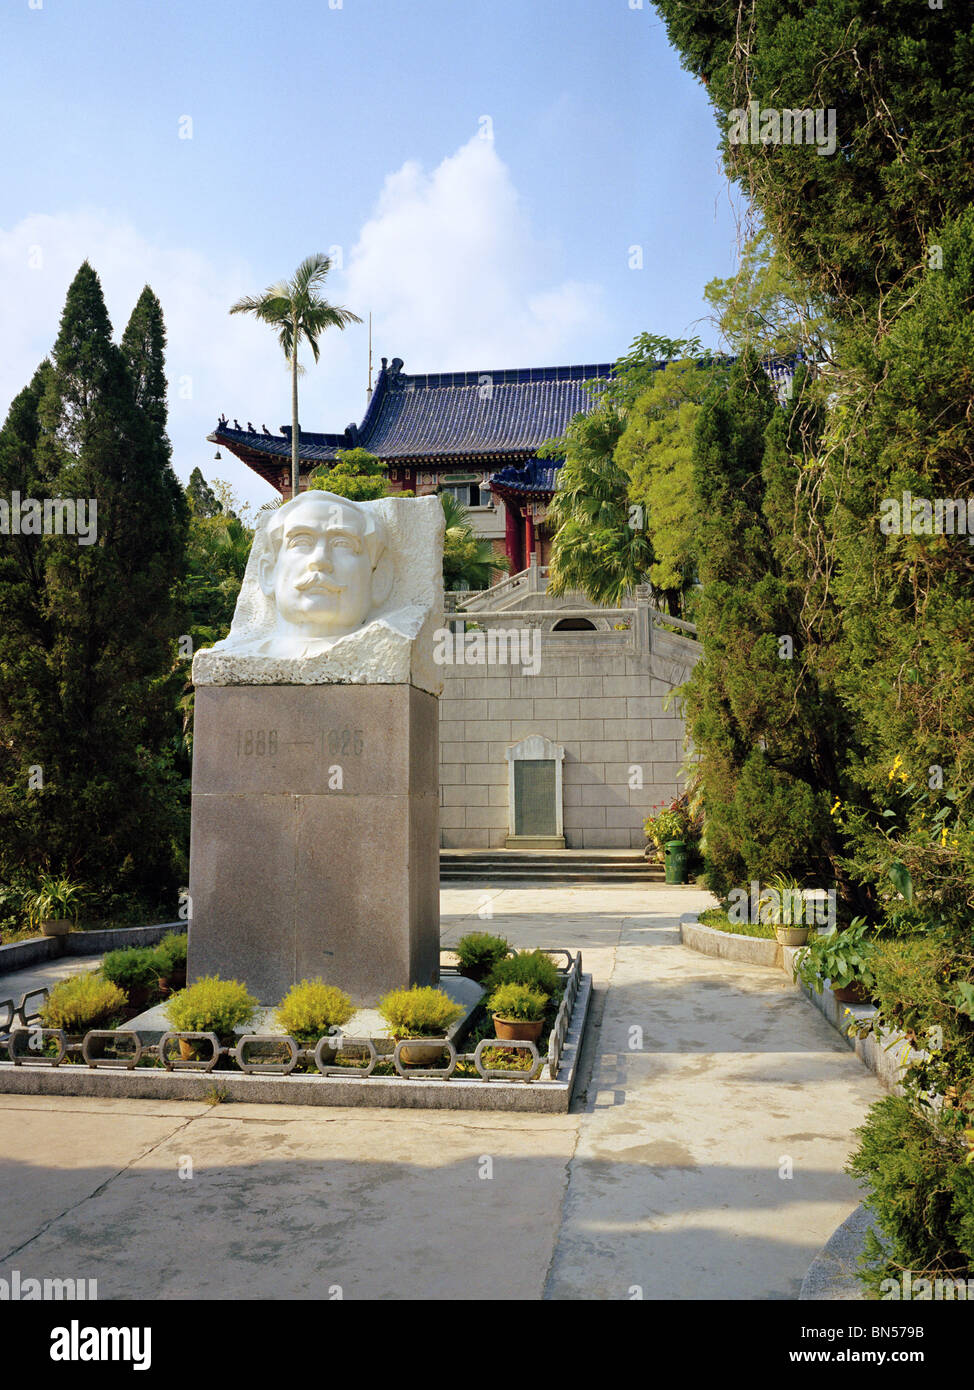 Bust of Dr Sun Yat-Sen Zhongshan Guangdong Province China Stock Photo